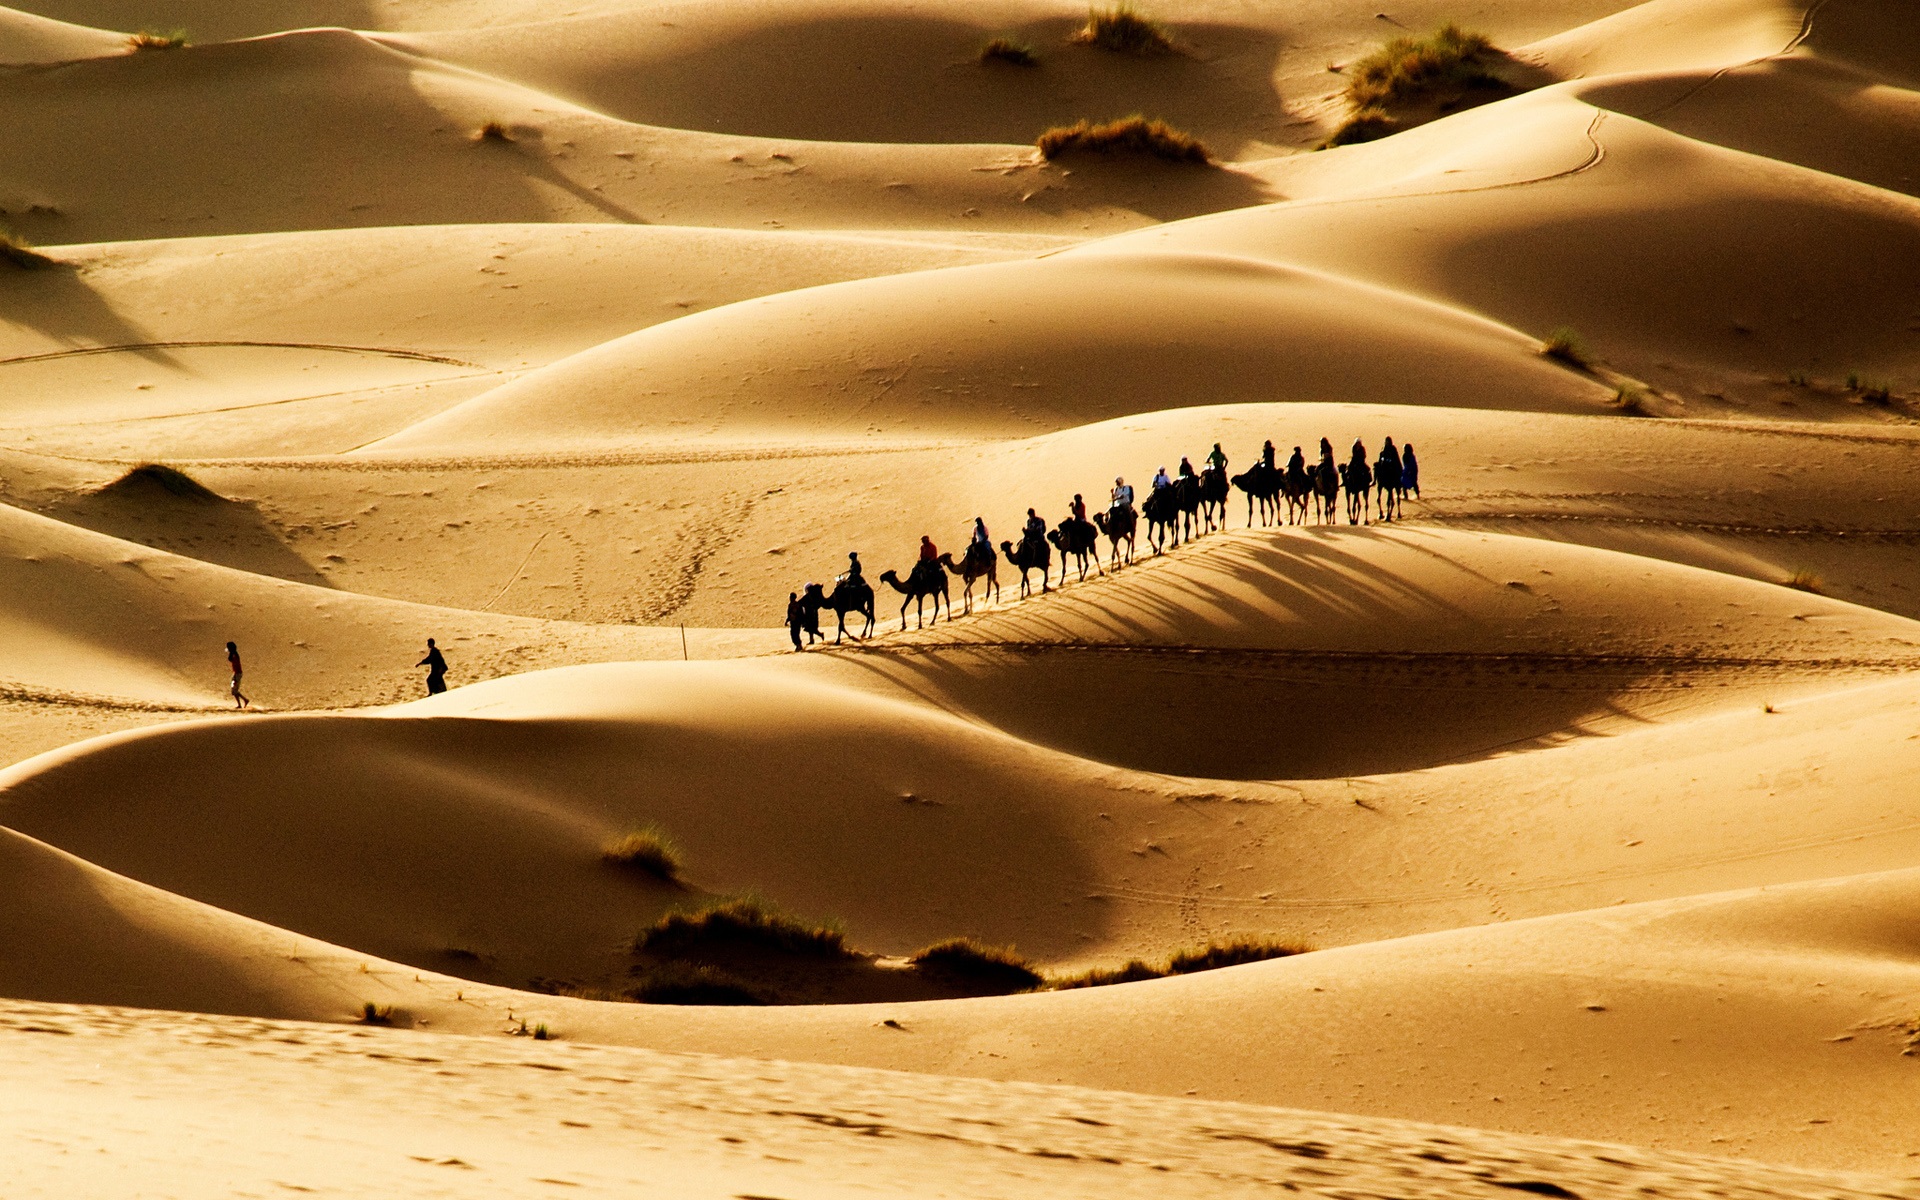 Wallpaper Hot Desert, Sand Dunes, The Caravan - Hot Desert Hd - HD Wallpaper 